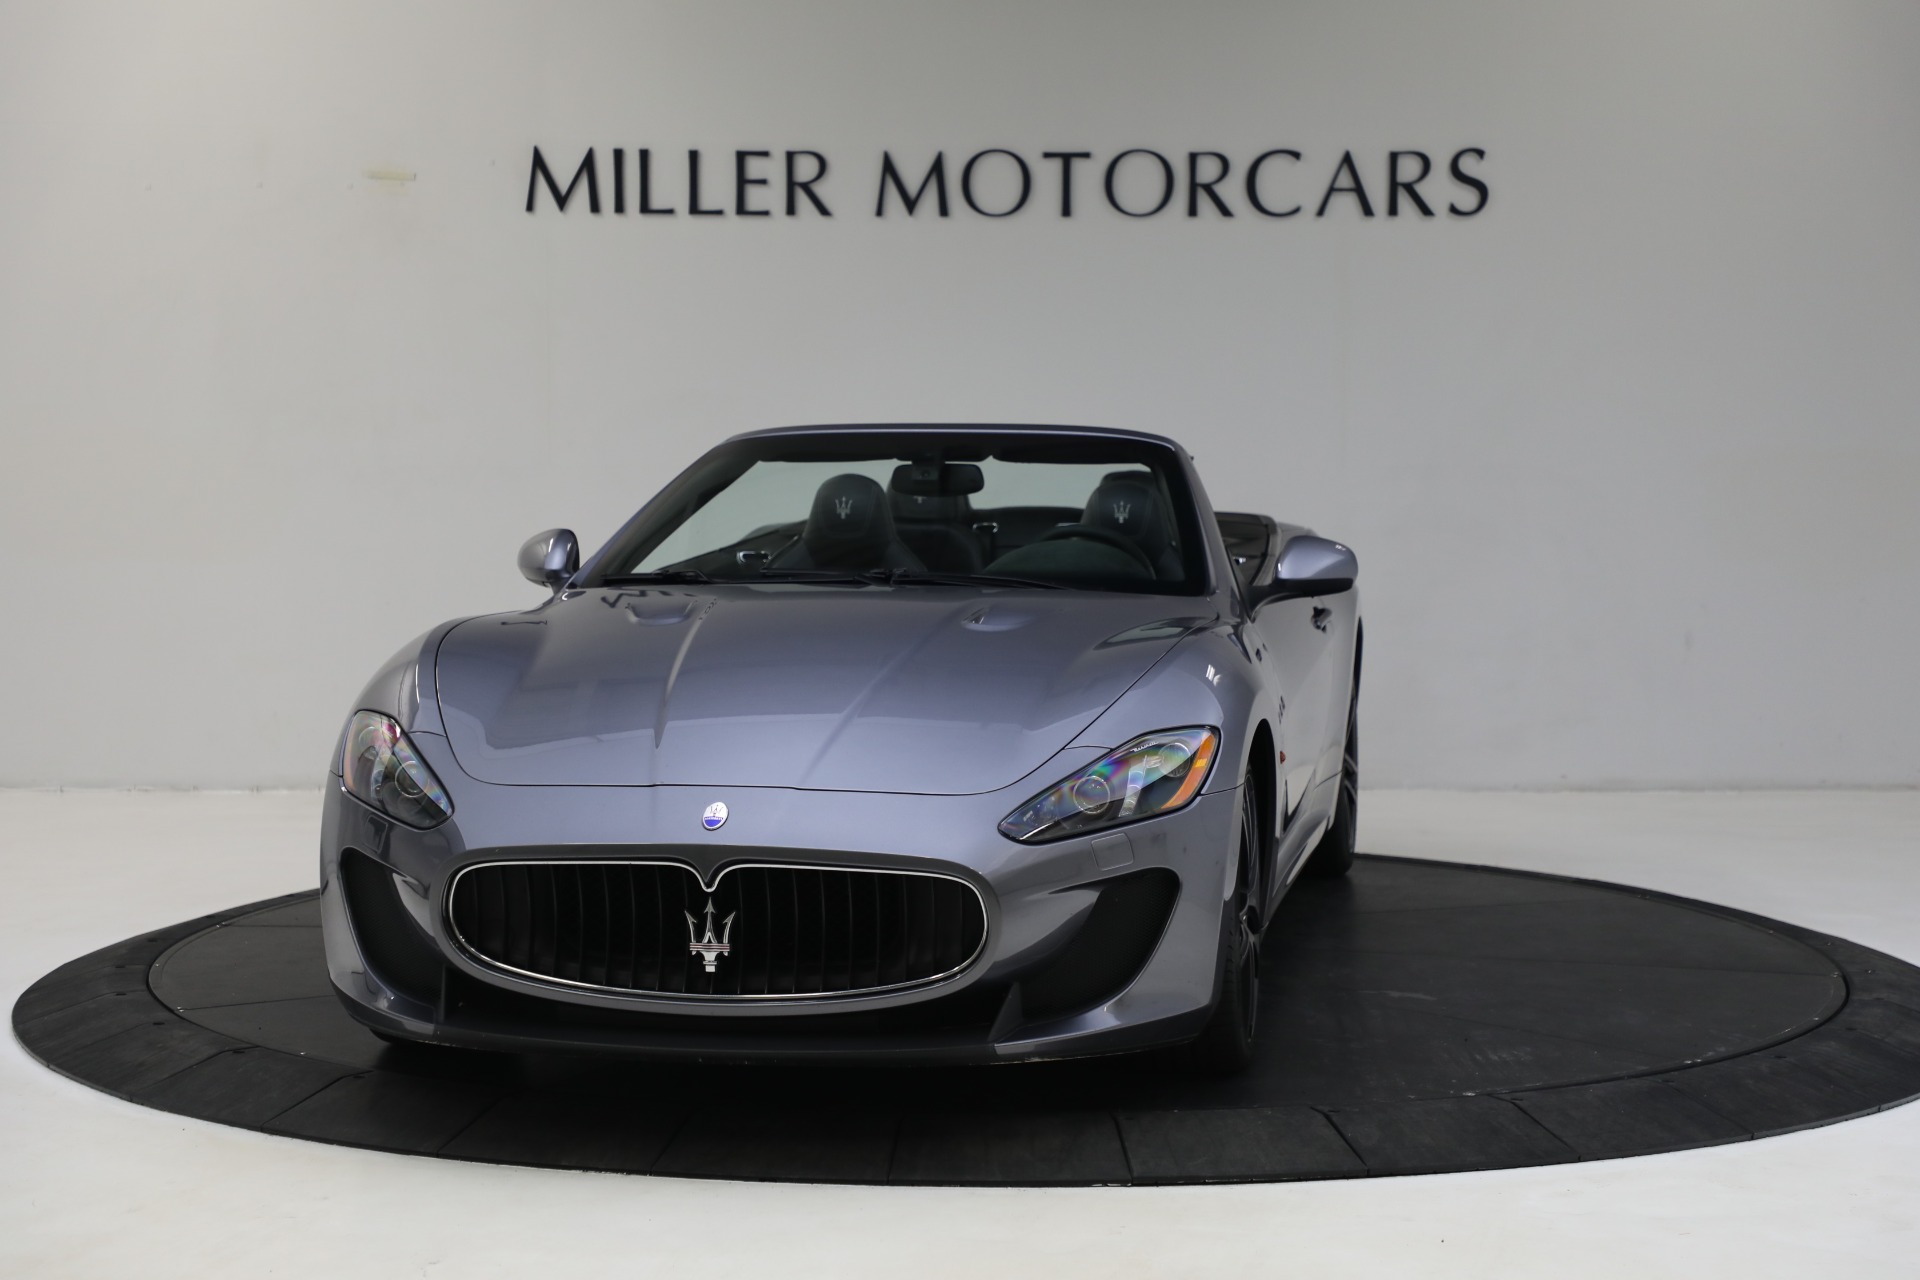 Used 2013 Maserati GranTurismo MC for sale $69,900 at Alfa Romeo of Greenwich in Greenwich CT 06830 1